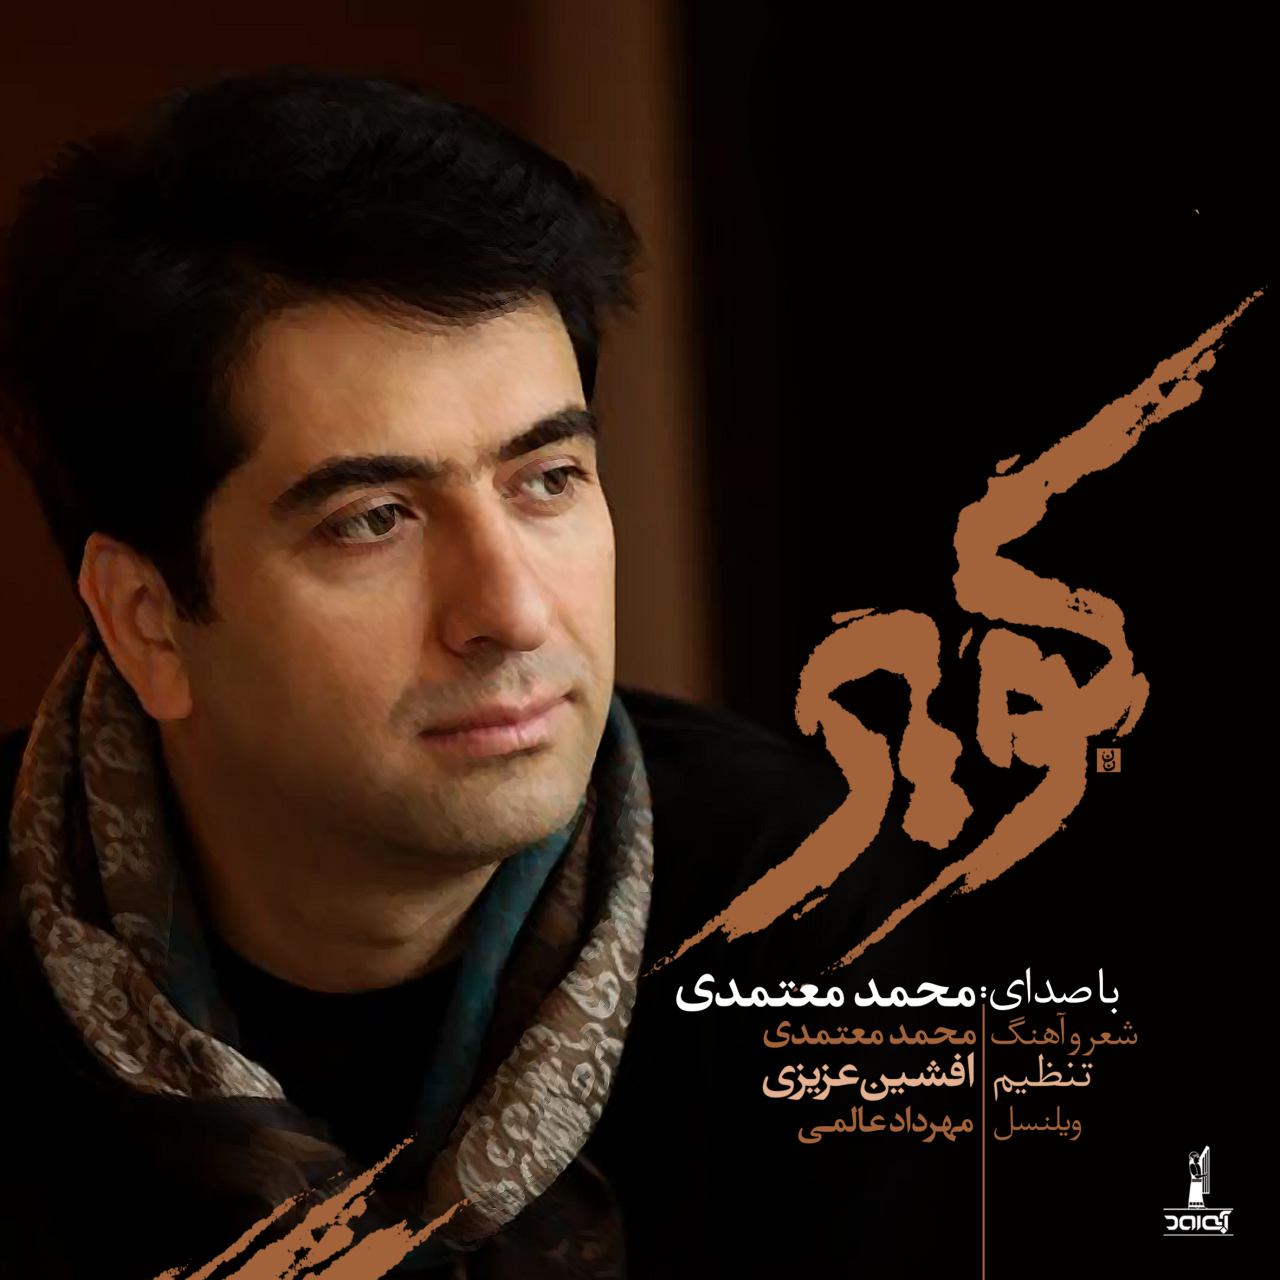 محمد معتمدی - کاشکی کویر